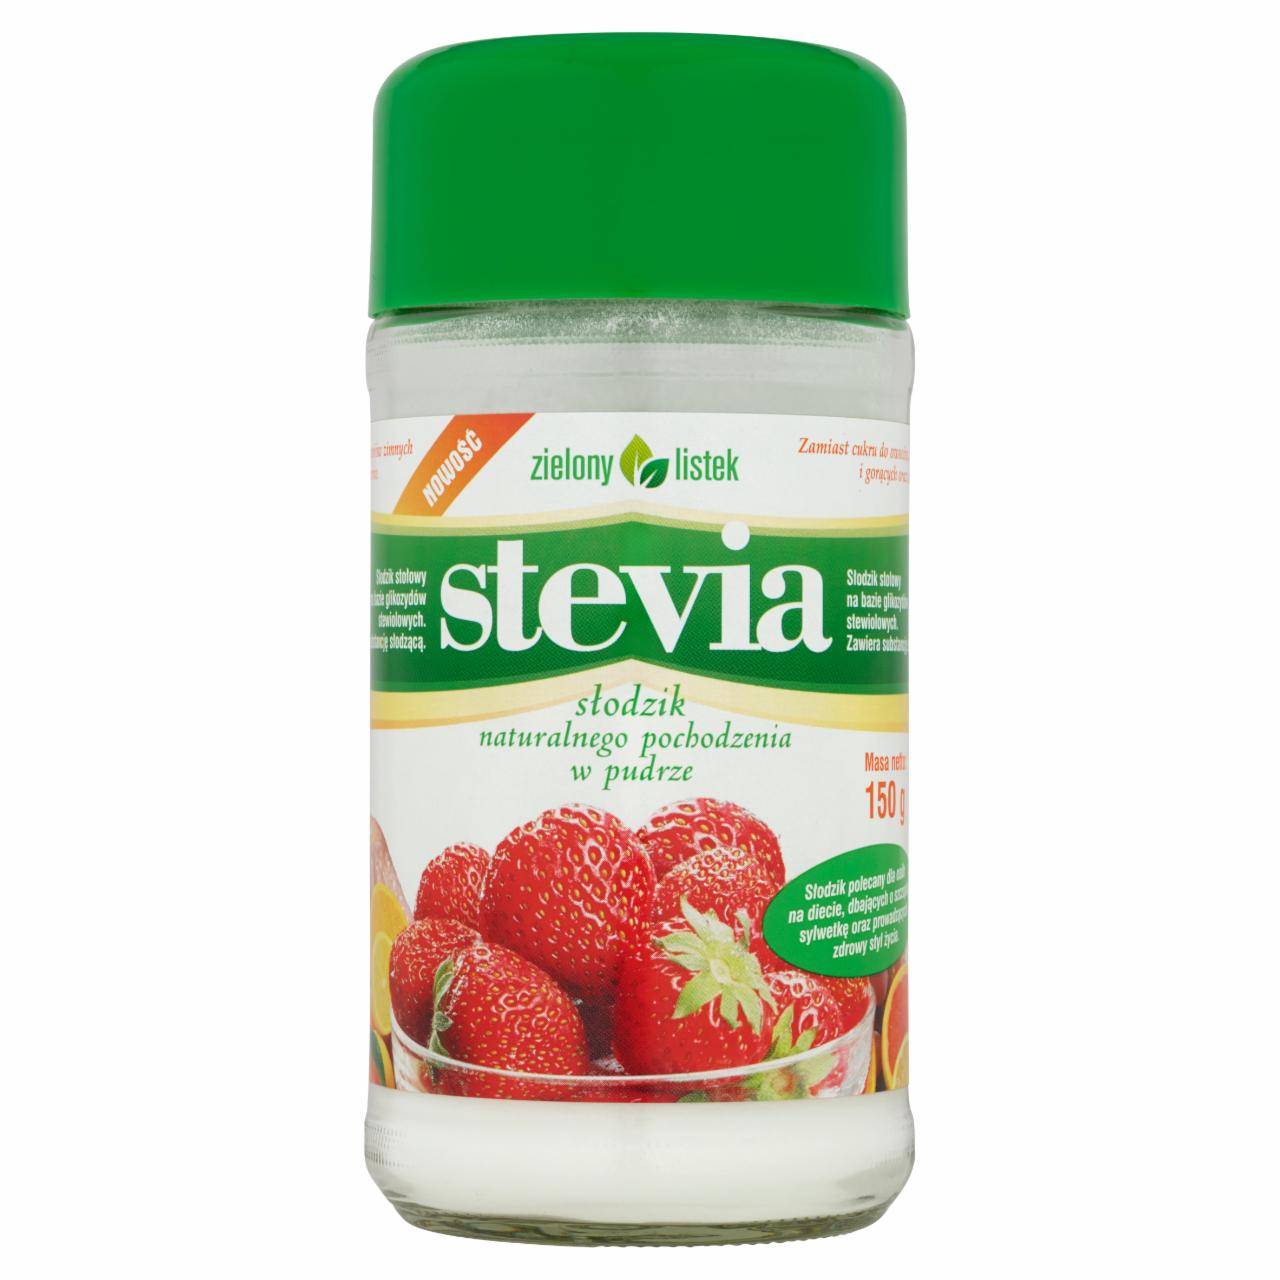 Zdjęcia - Zielony listek Stevia Słodzik naturalnego pochodzenia w pudrze 150 g